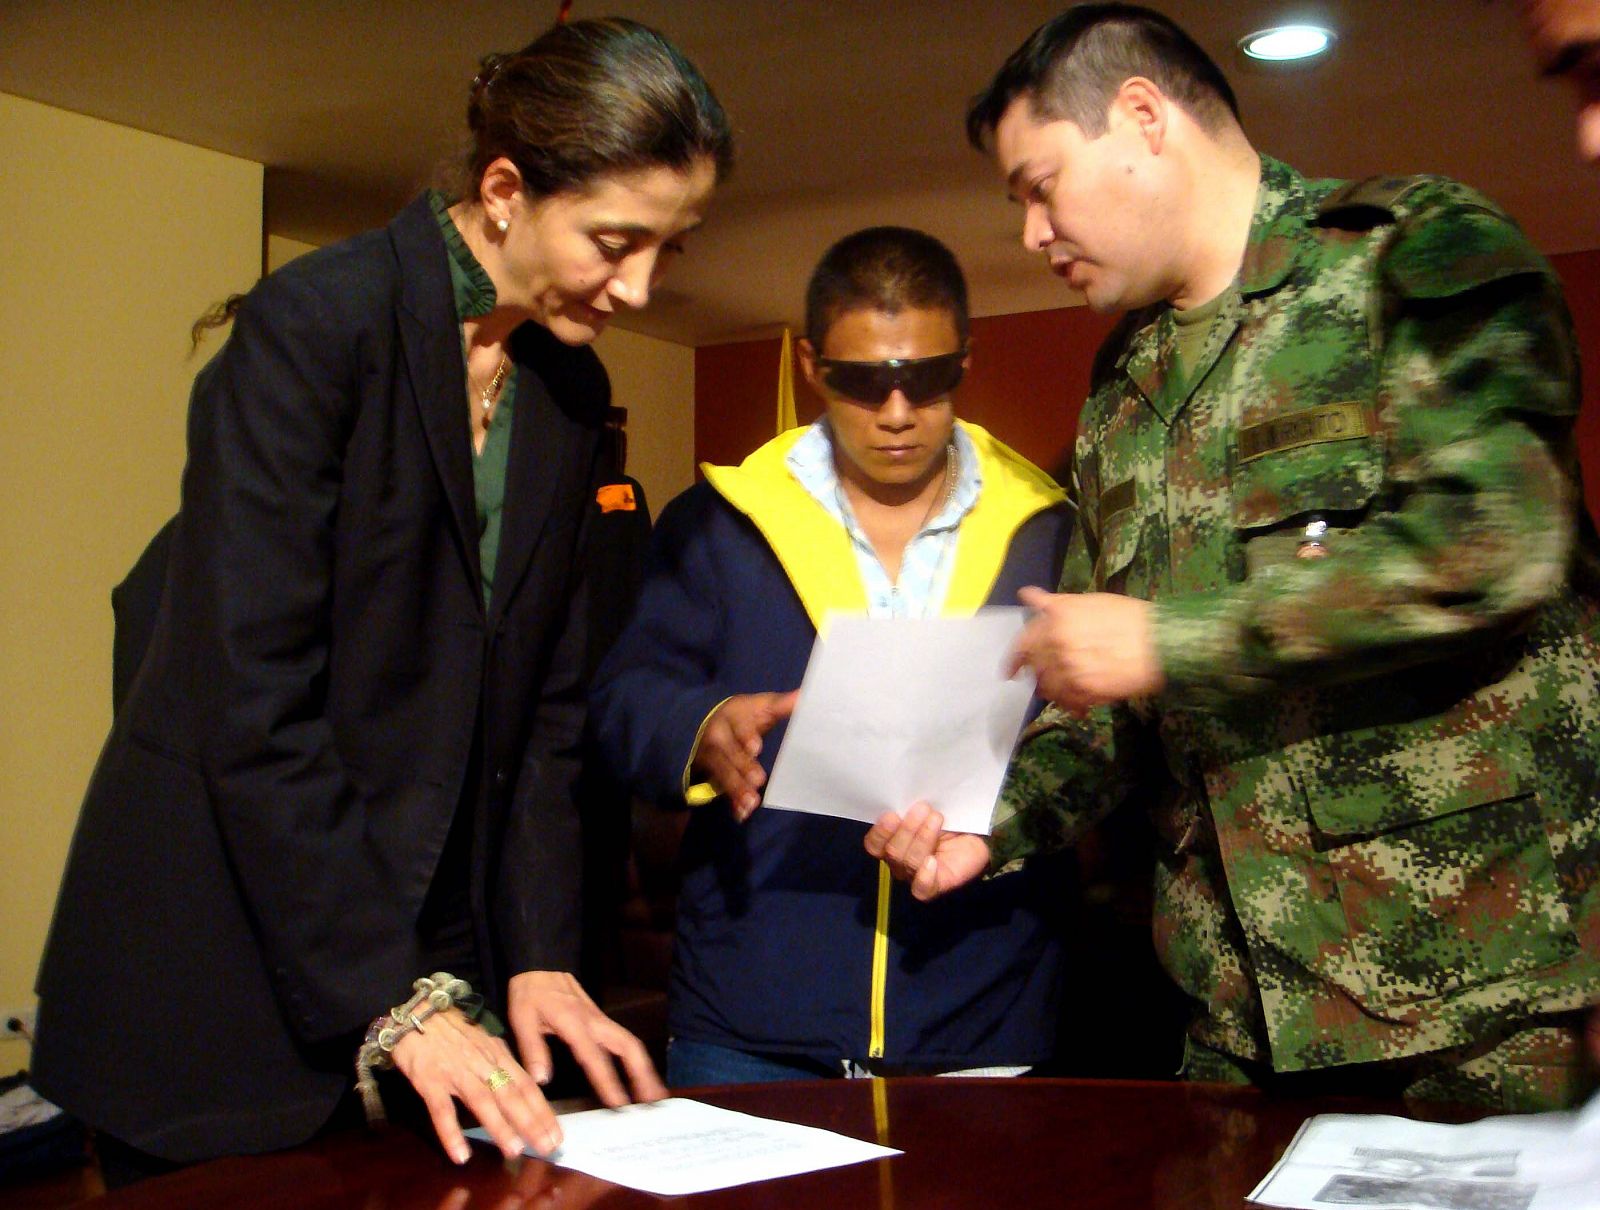 El rebelde Wilson Bueno Largo, alias "Isaza" recibe los documentos antes de partir con su compañera sentimental, Lilia Isabel Bañol ("Marisol") hacia Francia en compañía de la ex rehén colombo-francesa Íngrid Betancourt , en Bogotá (Colombia).